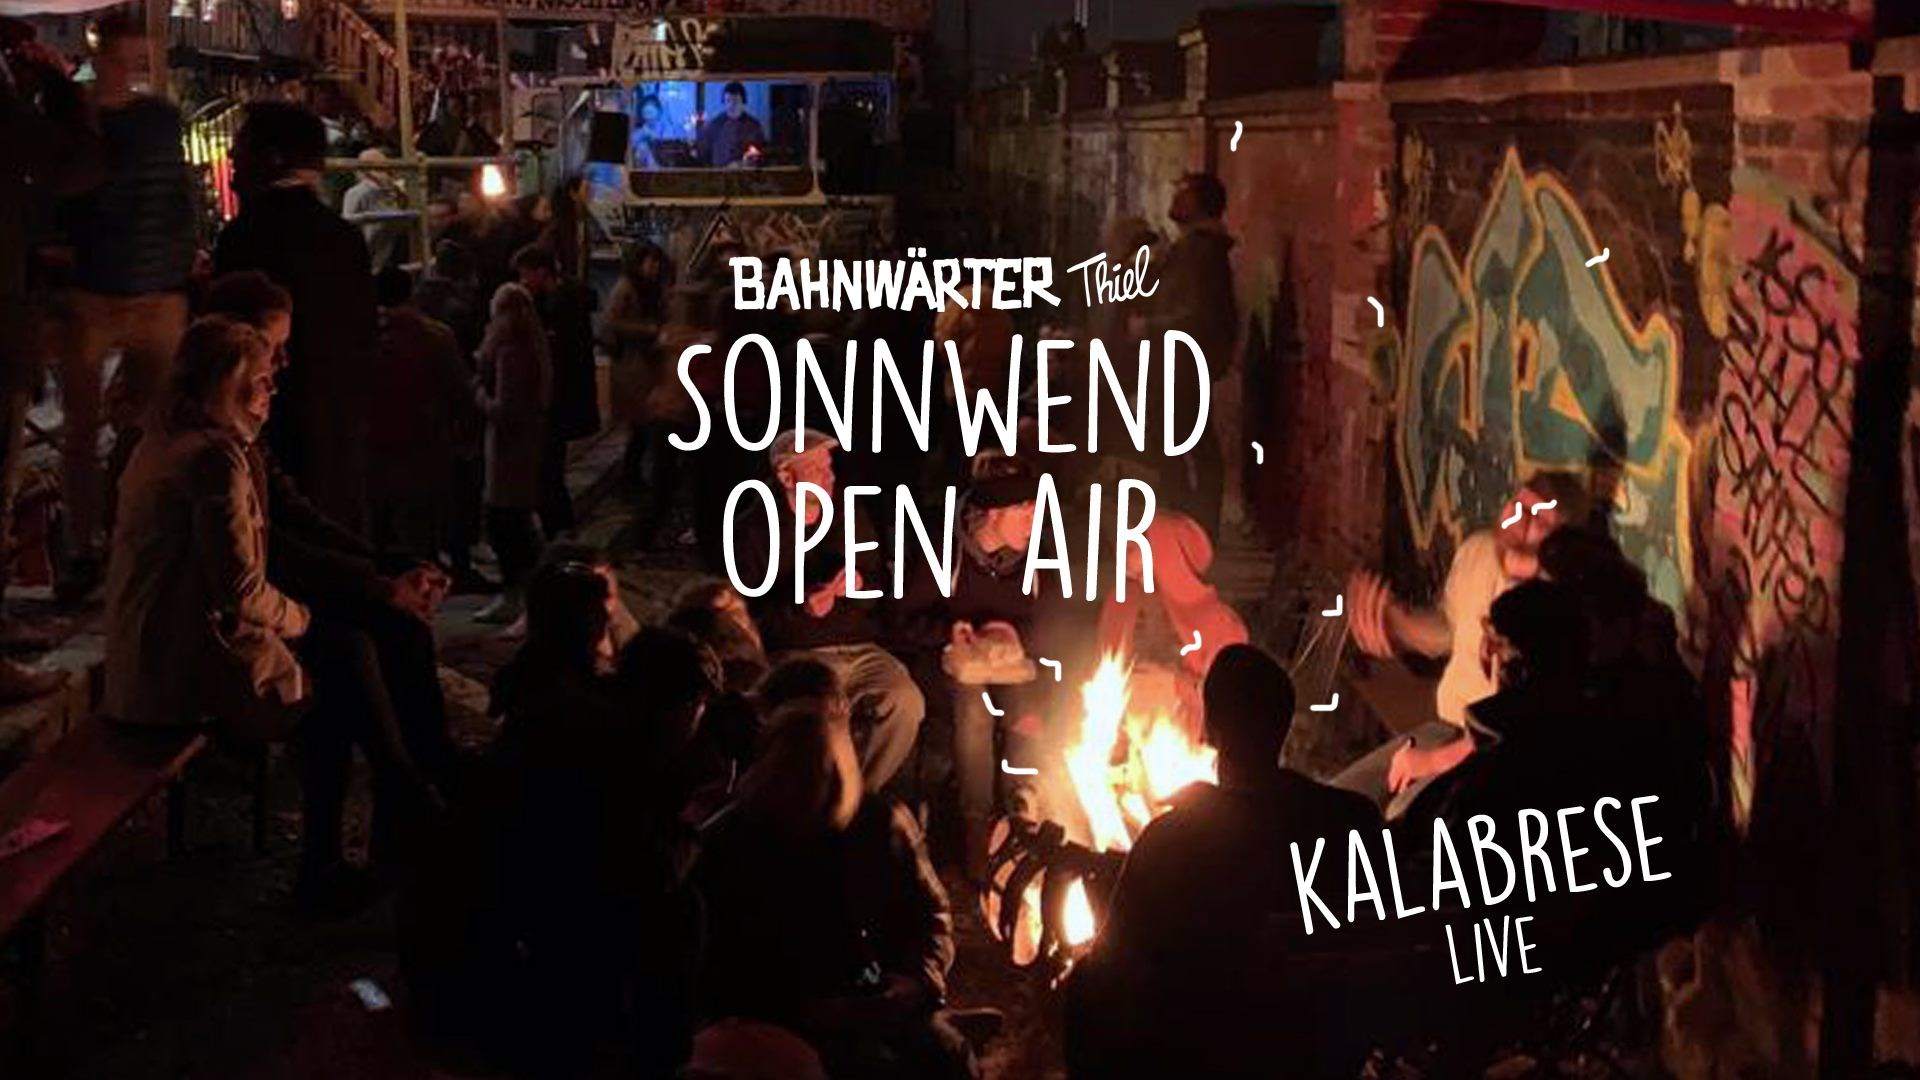 Sonnwend Open Air mit Kalabrese Live - フライヤー表